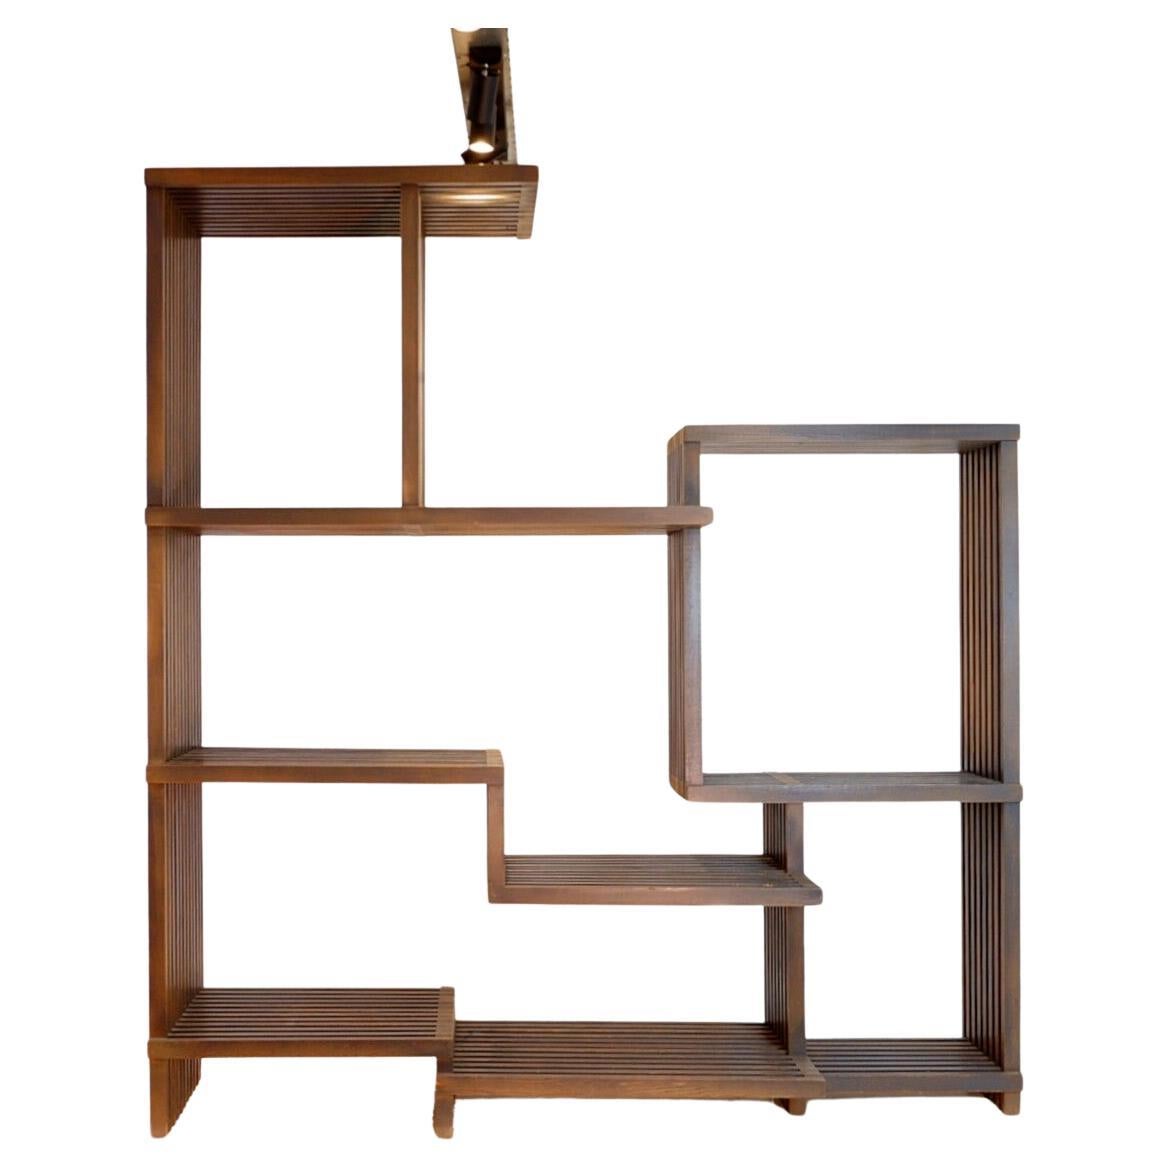 Assymetrical wooden shelf